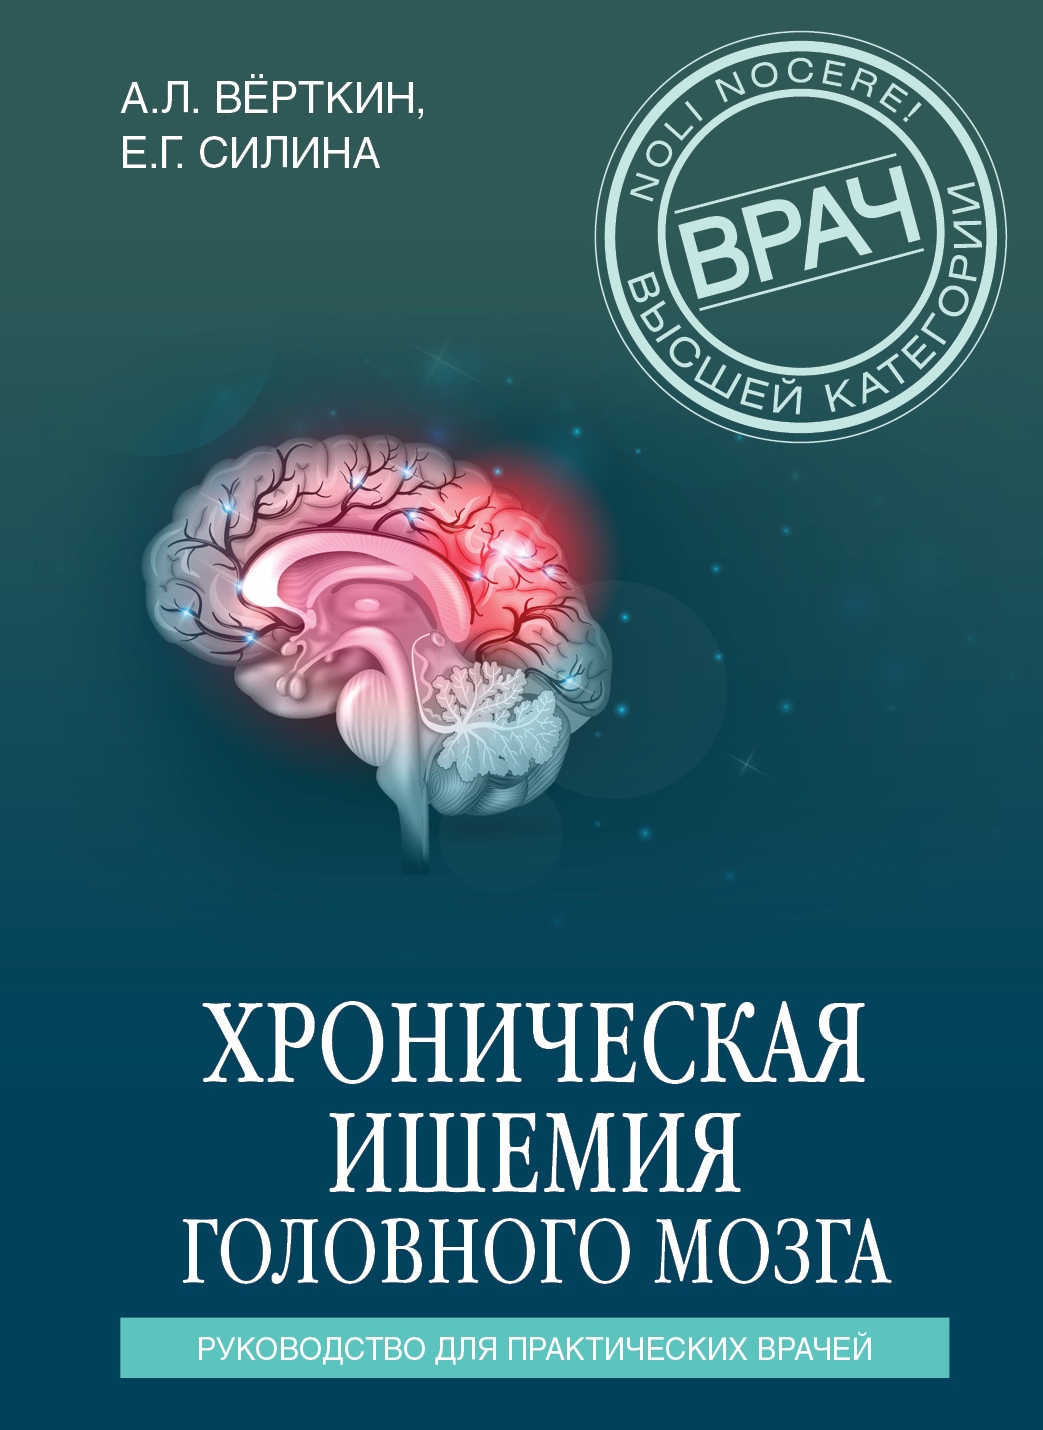 Хроническая ишемия головного мозга. Руководство для практических врачей, А.  Л. Вёрткин – скачать книгу fb2, epub, pdf на ЛитРес